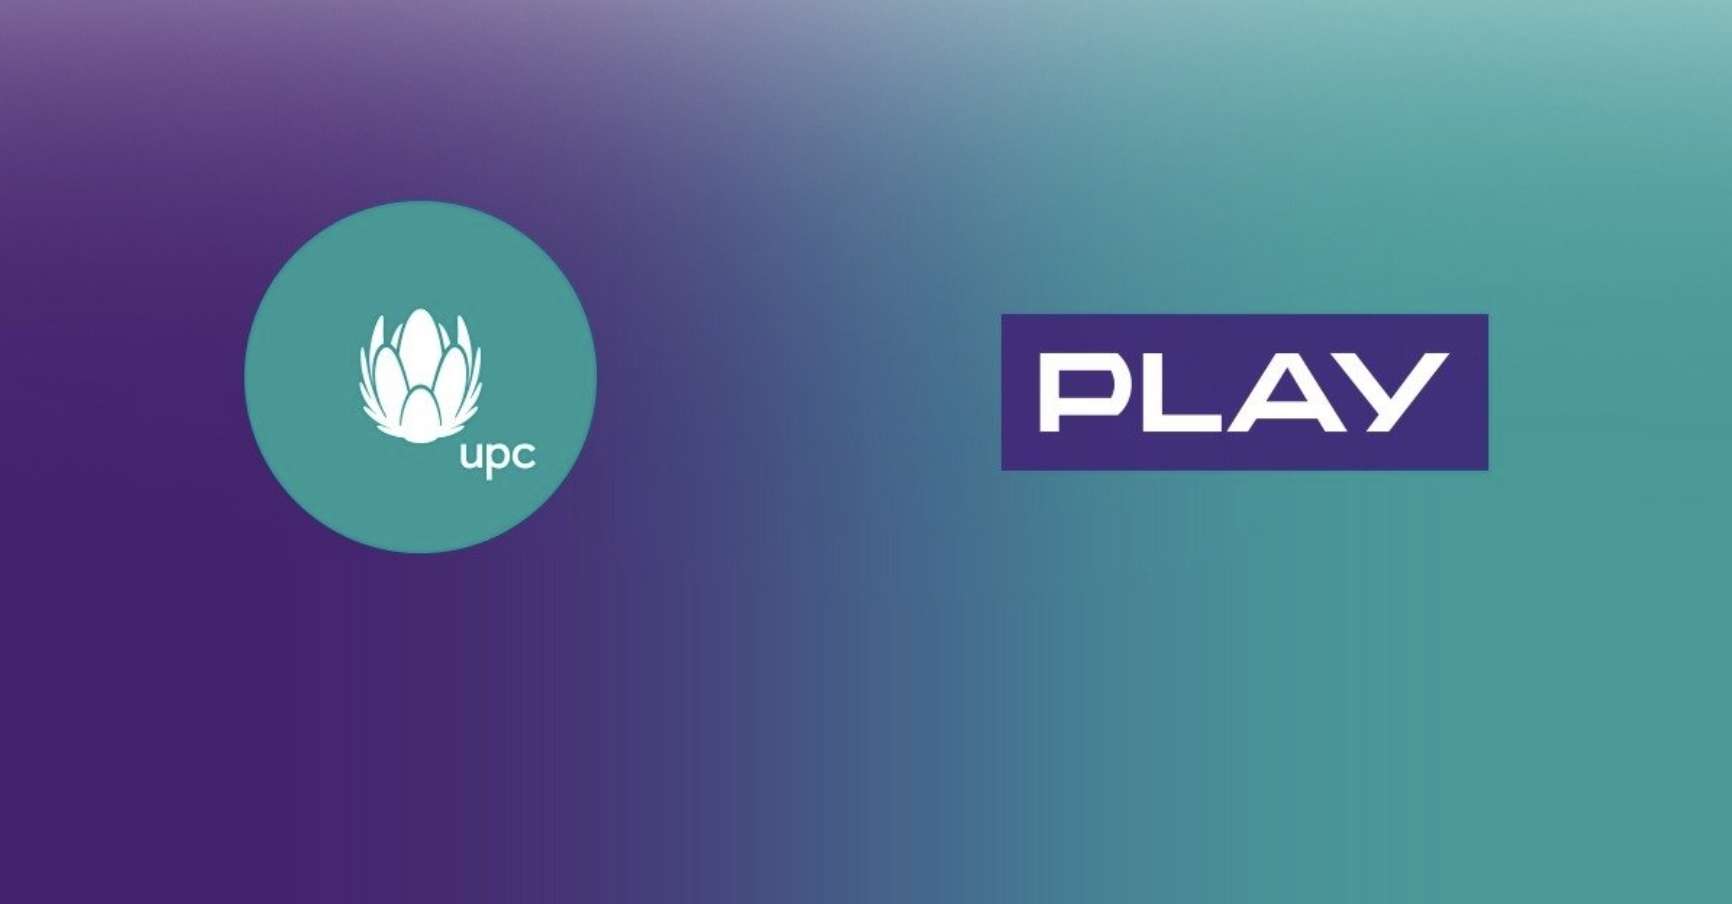 To koniec: Play i UPC kasują ważną usługę! Czy można wypowiedzieć umowę?